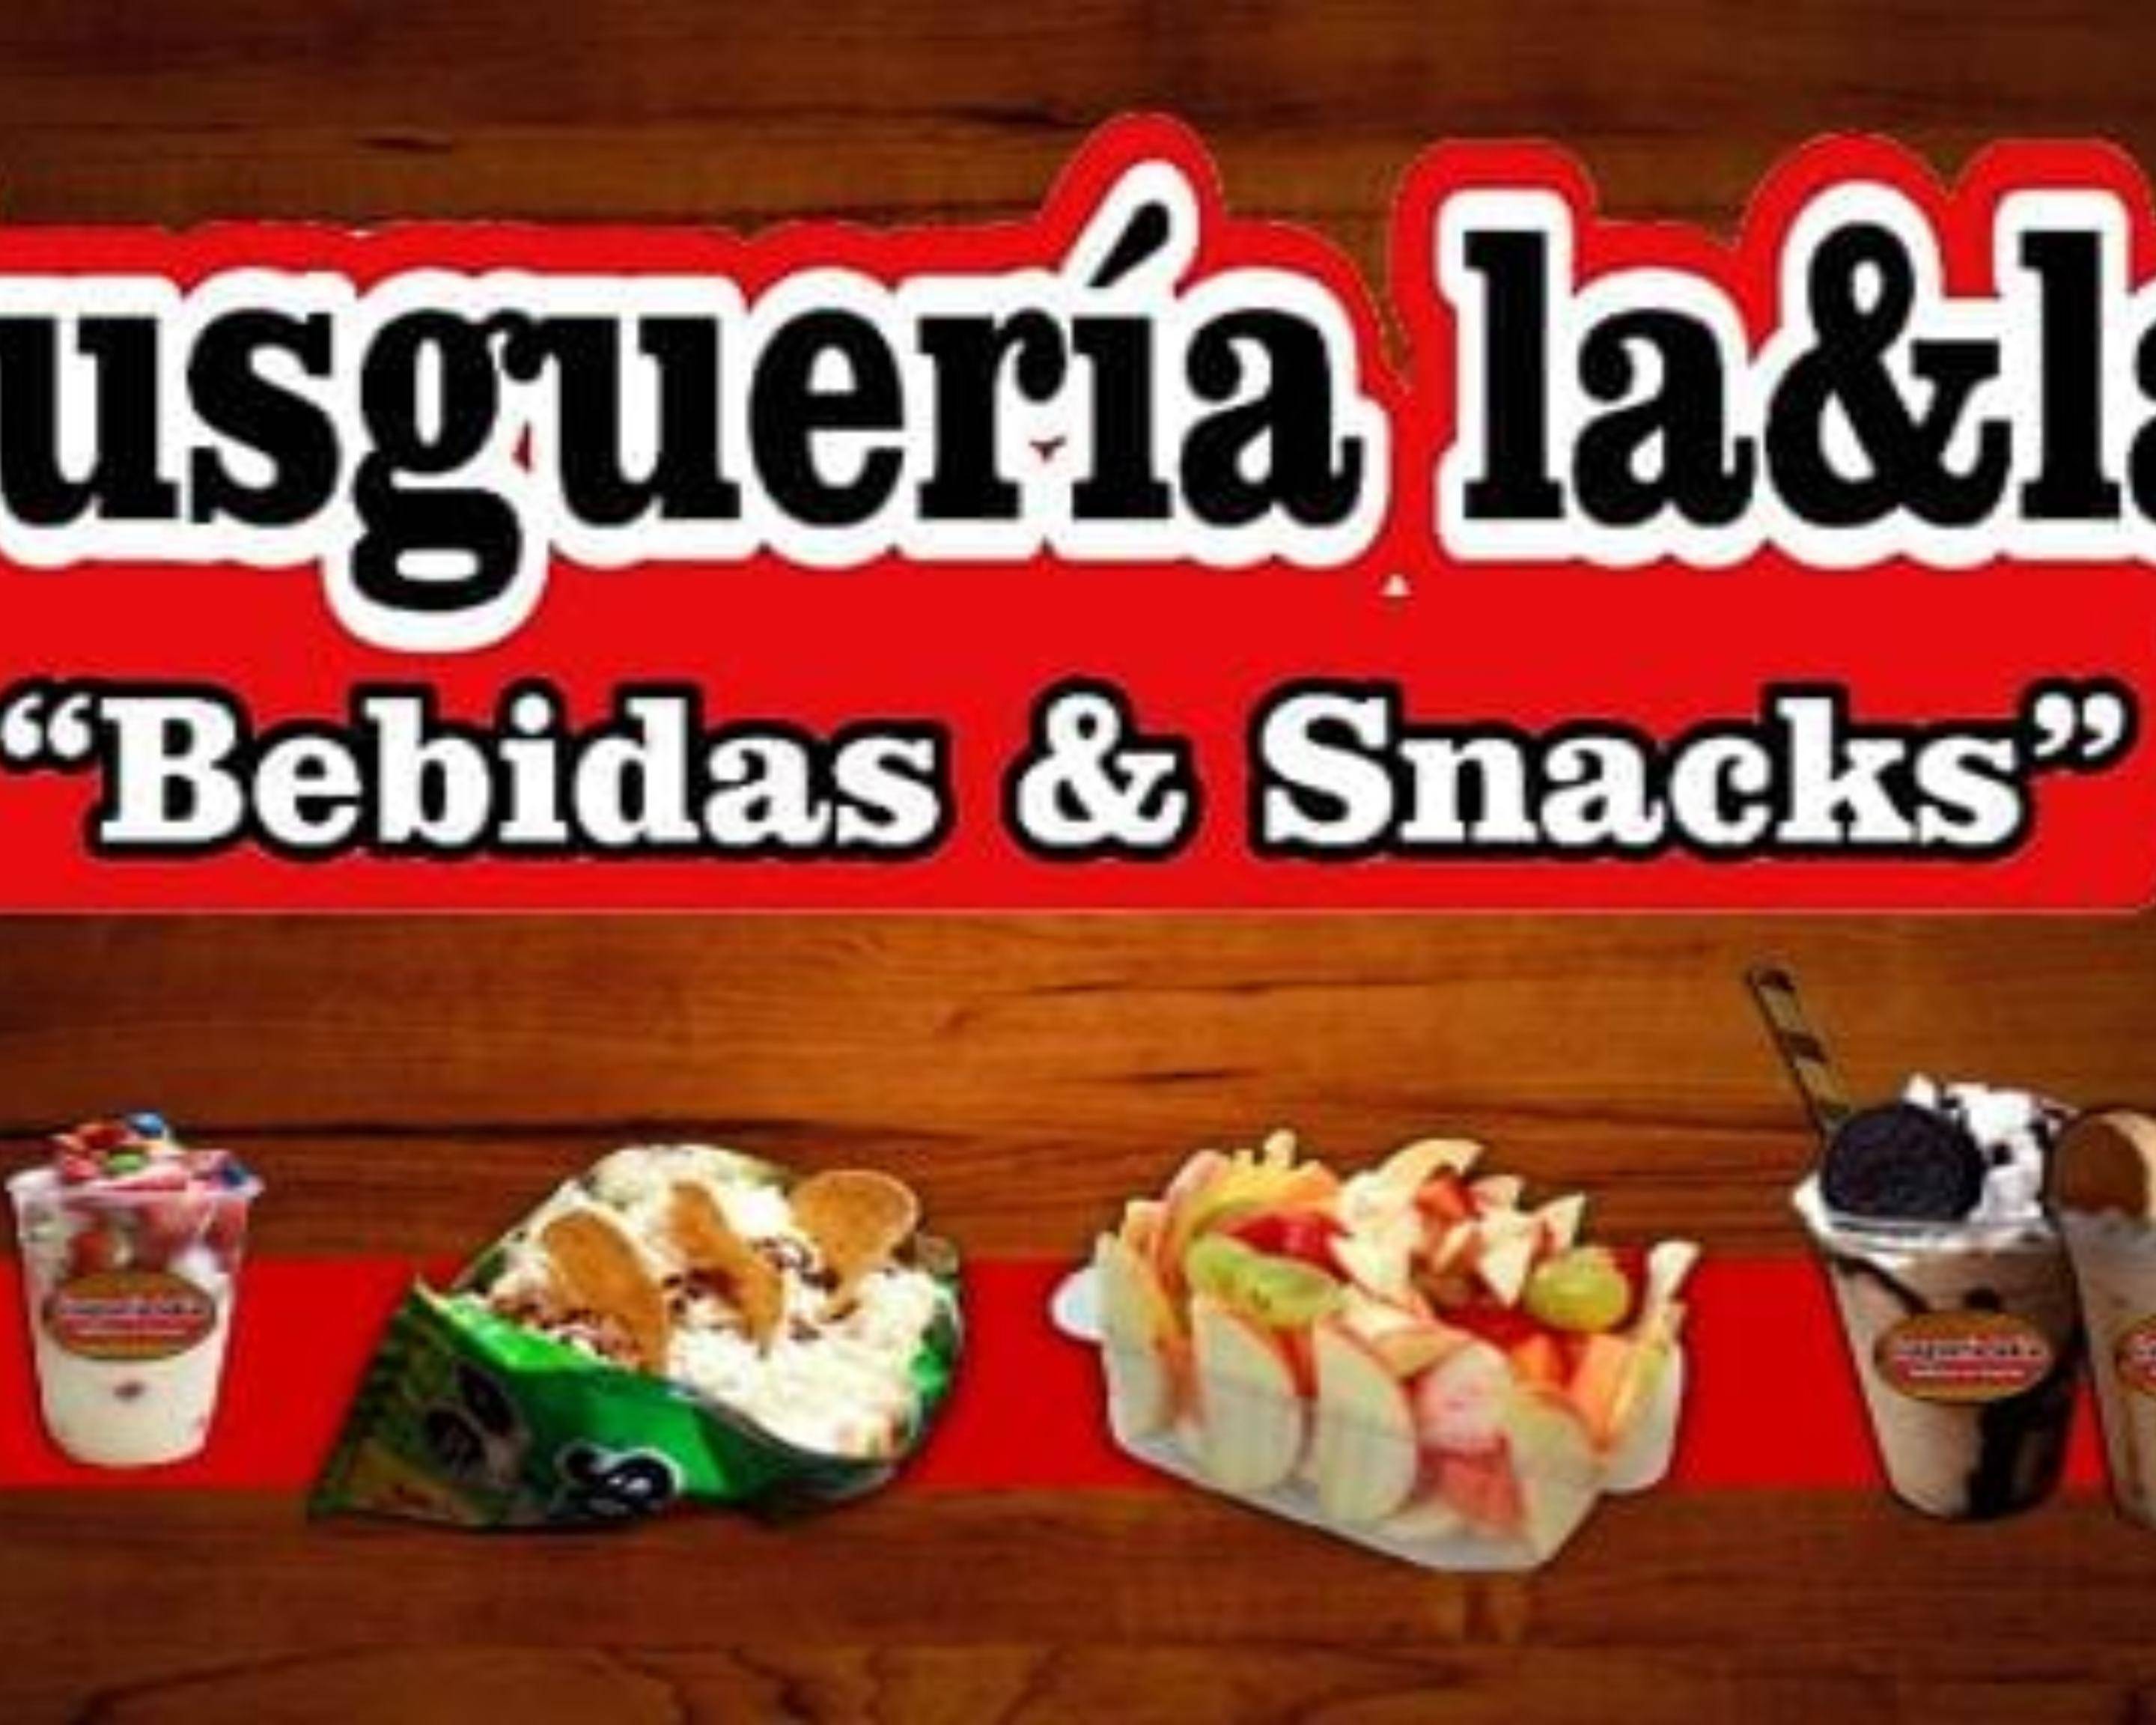 Gusgueria Rosy Bebidas Y Snacks Menú A Domicilio En Guadalajara Menú And Precios Uber Eats 0735